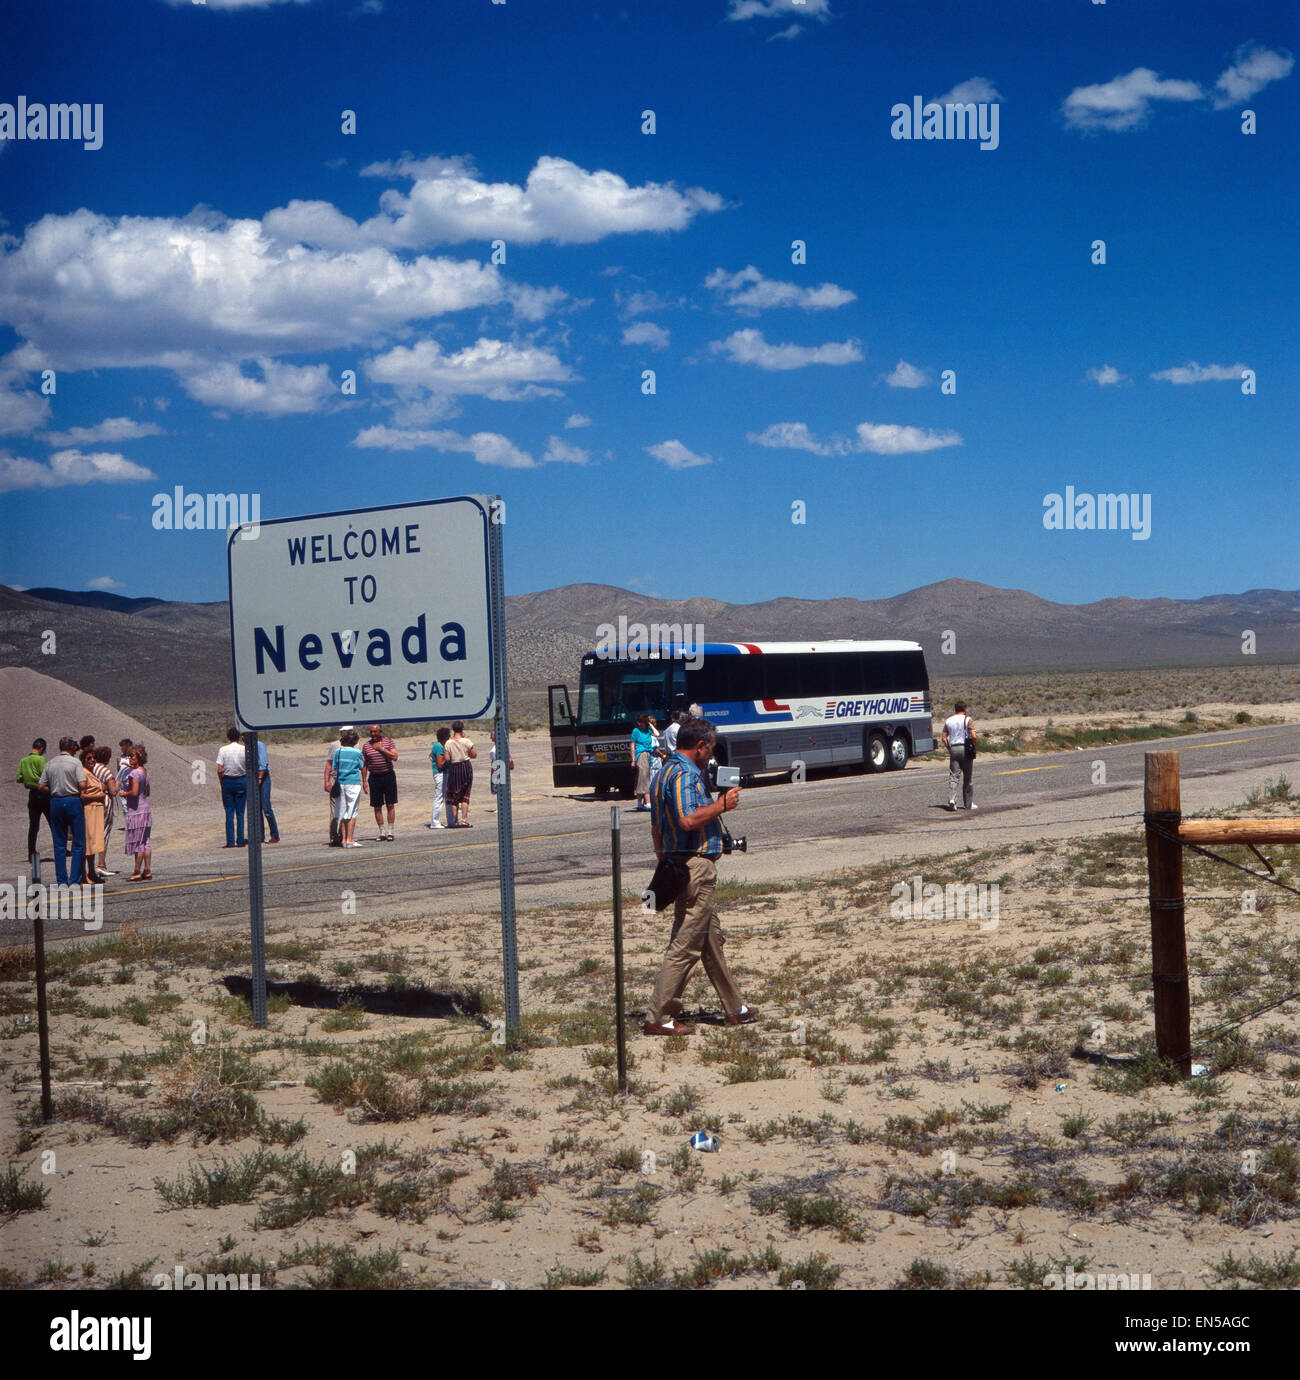 Eine Reisegruppe auf dem Weg nach Nevada, USA 1980er Jahre. A travel group on their way to Nevada, US 1980s. Stock Photo